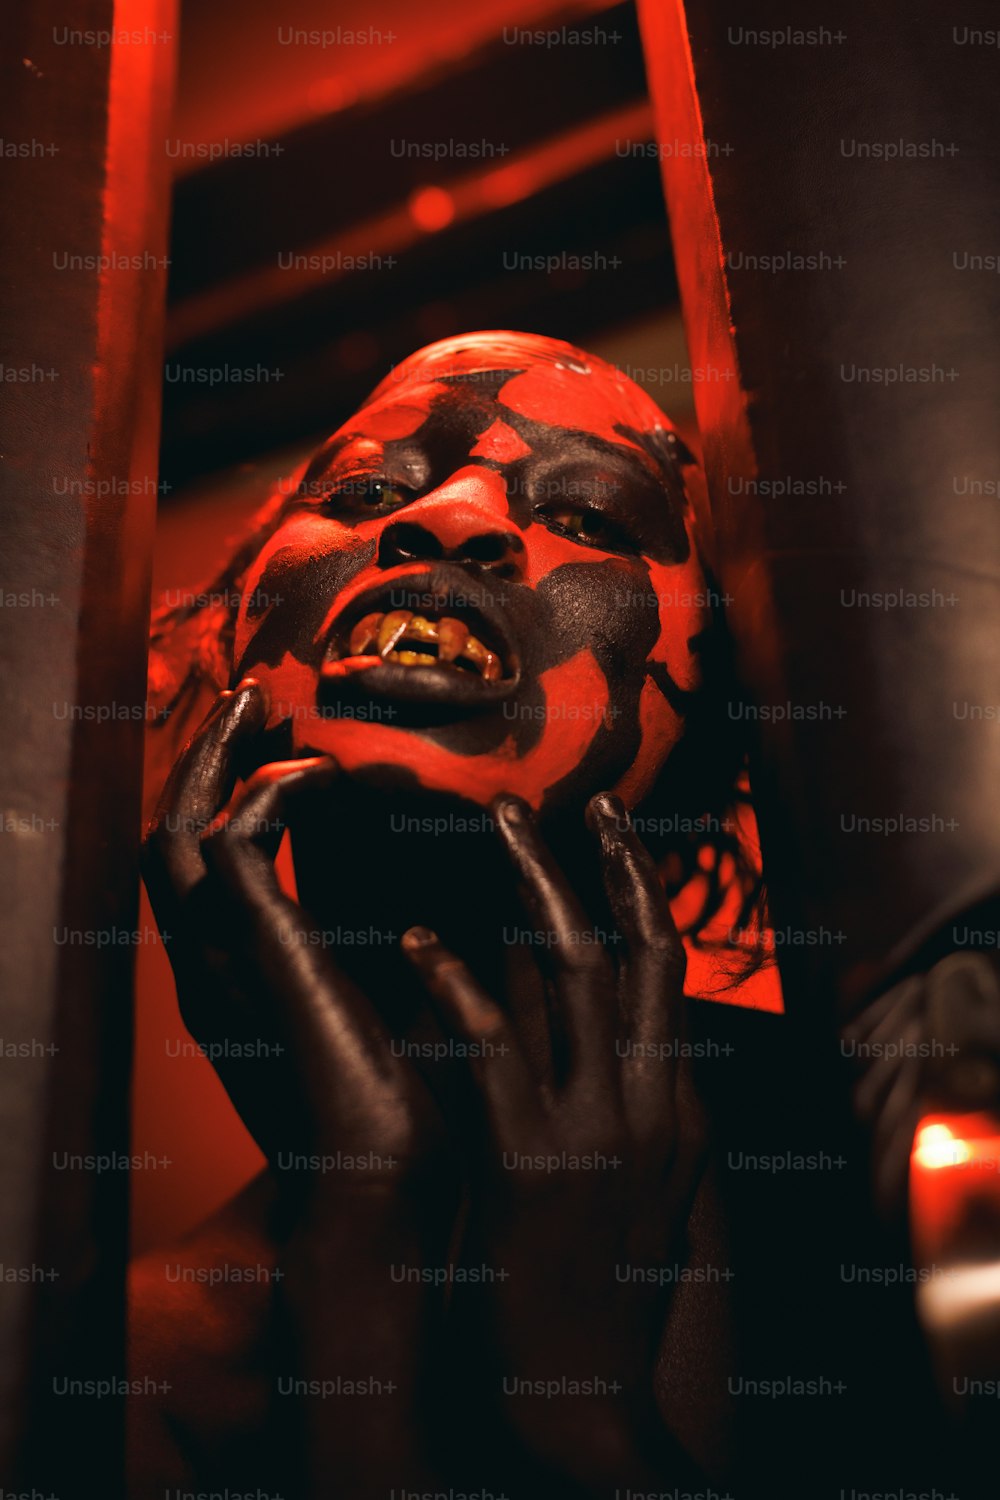 eine Person in einer rot-schwarzen Maske, die ihre Hand vor ihr Gesicht hält